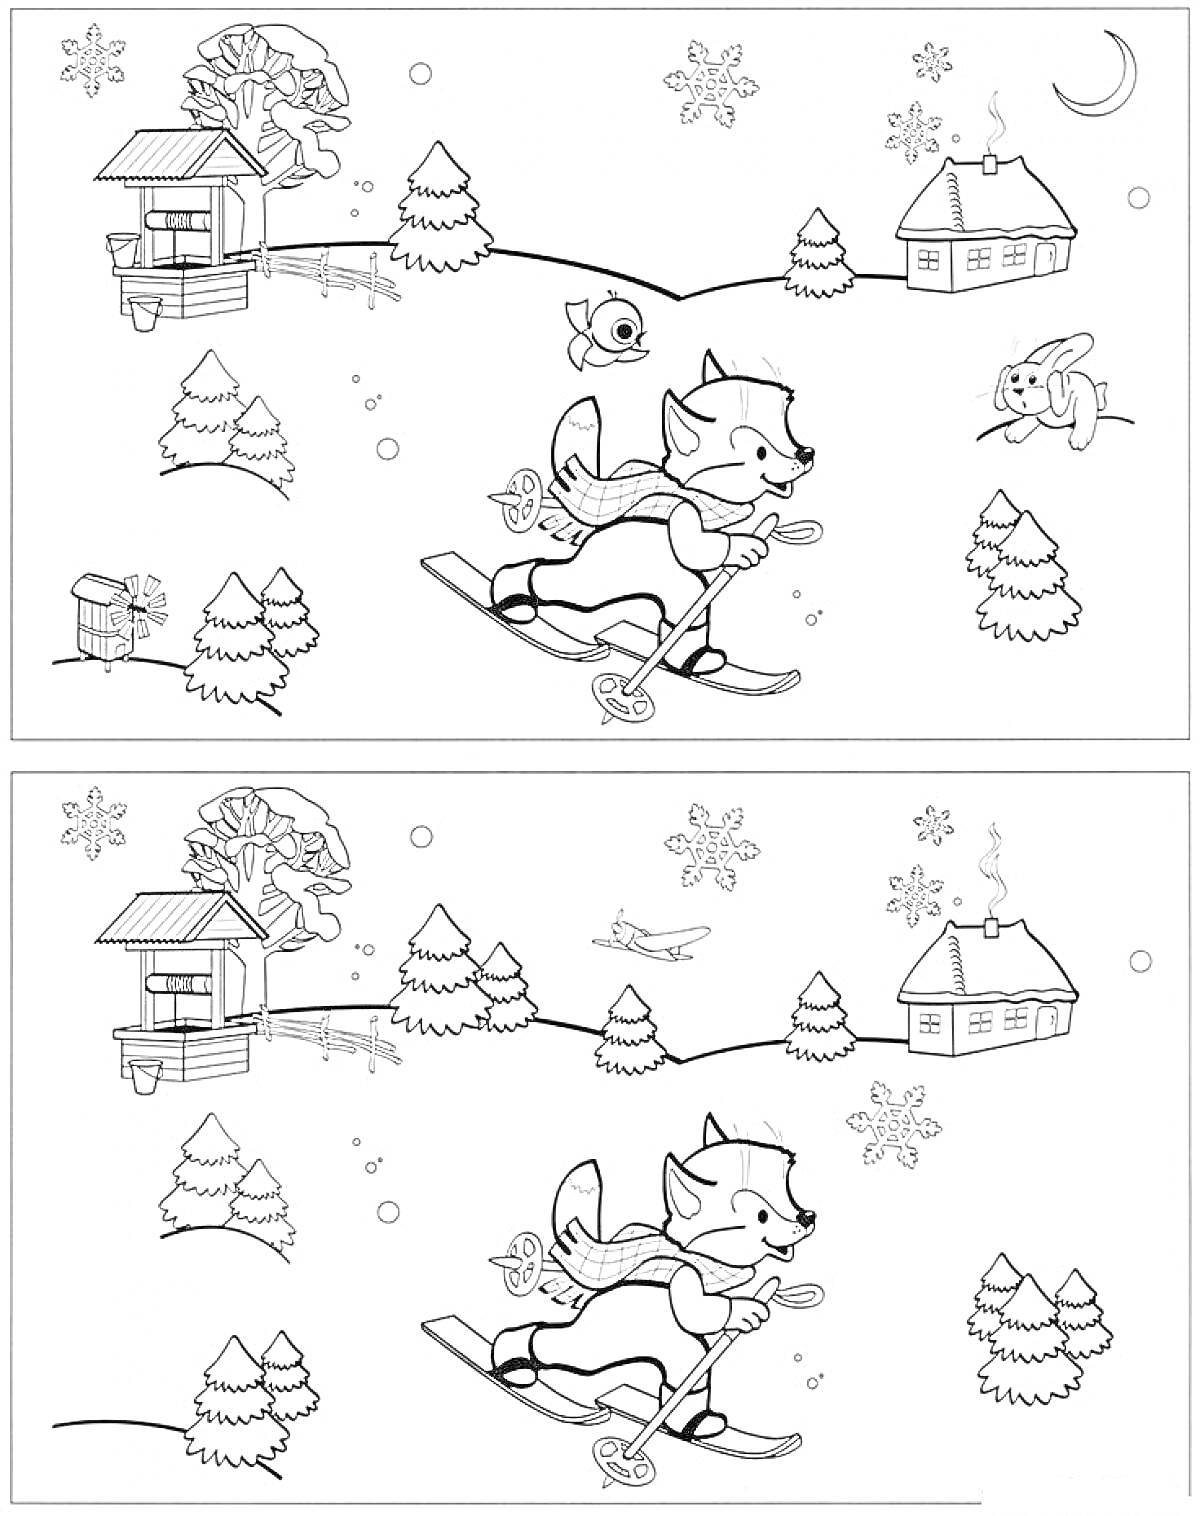  Найди отличия: зимний пейзаж с лисой на лыжах, деревьями, домиком, забором, кроликом, рыбой и снегом